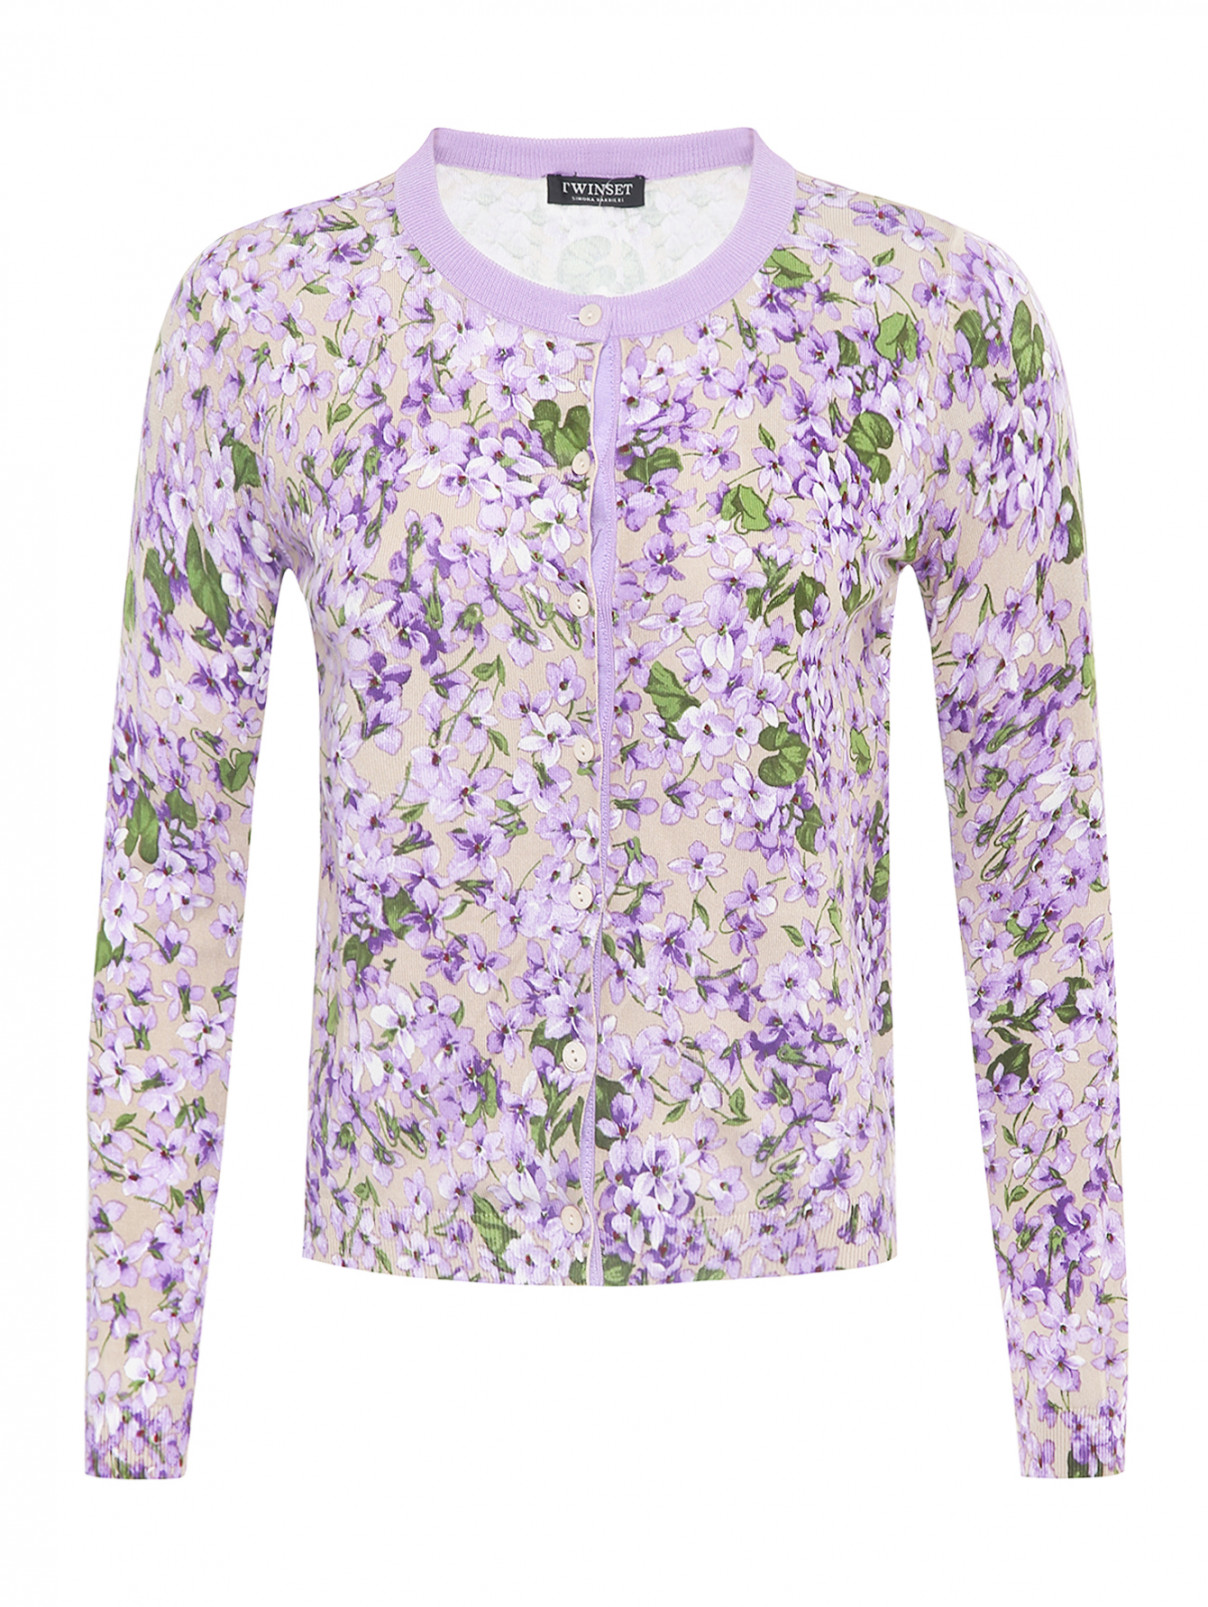 Кардиган в комплекте с футболкой TWINSET  –  Общий вид  – Цвет:  Фиолетовый